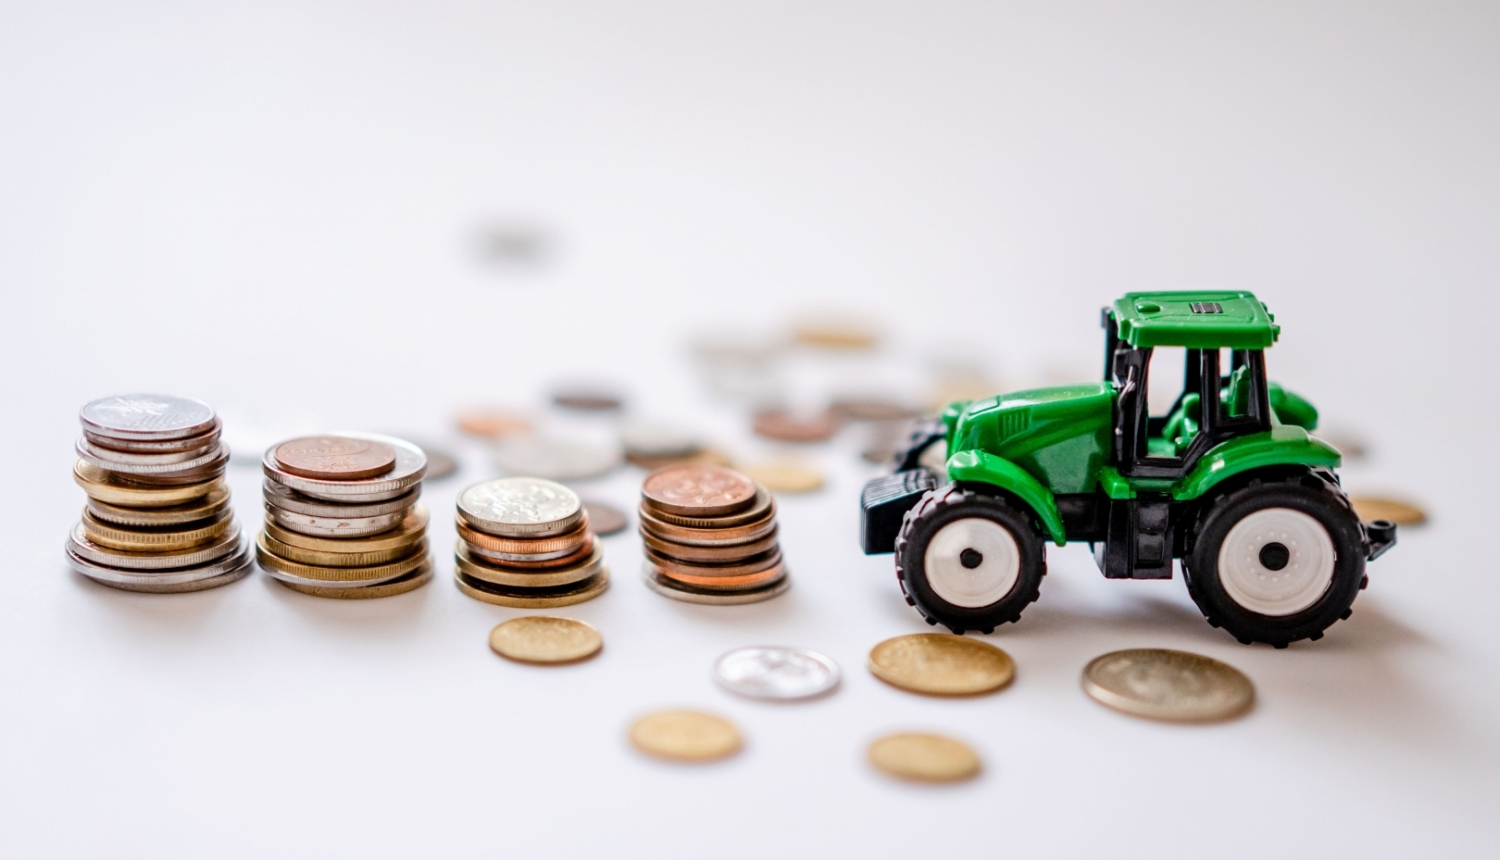 Zaļš rotaļu traktors, kuram priekšā četras monētu kaudzītes un atsevišķas monētas izbārstītas pa gaišu galda virsmu